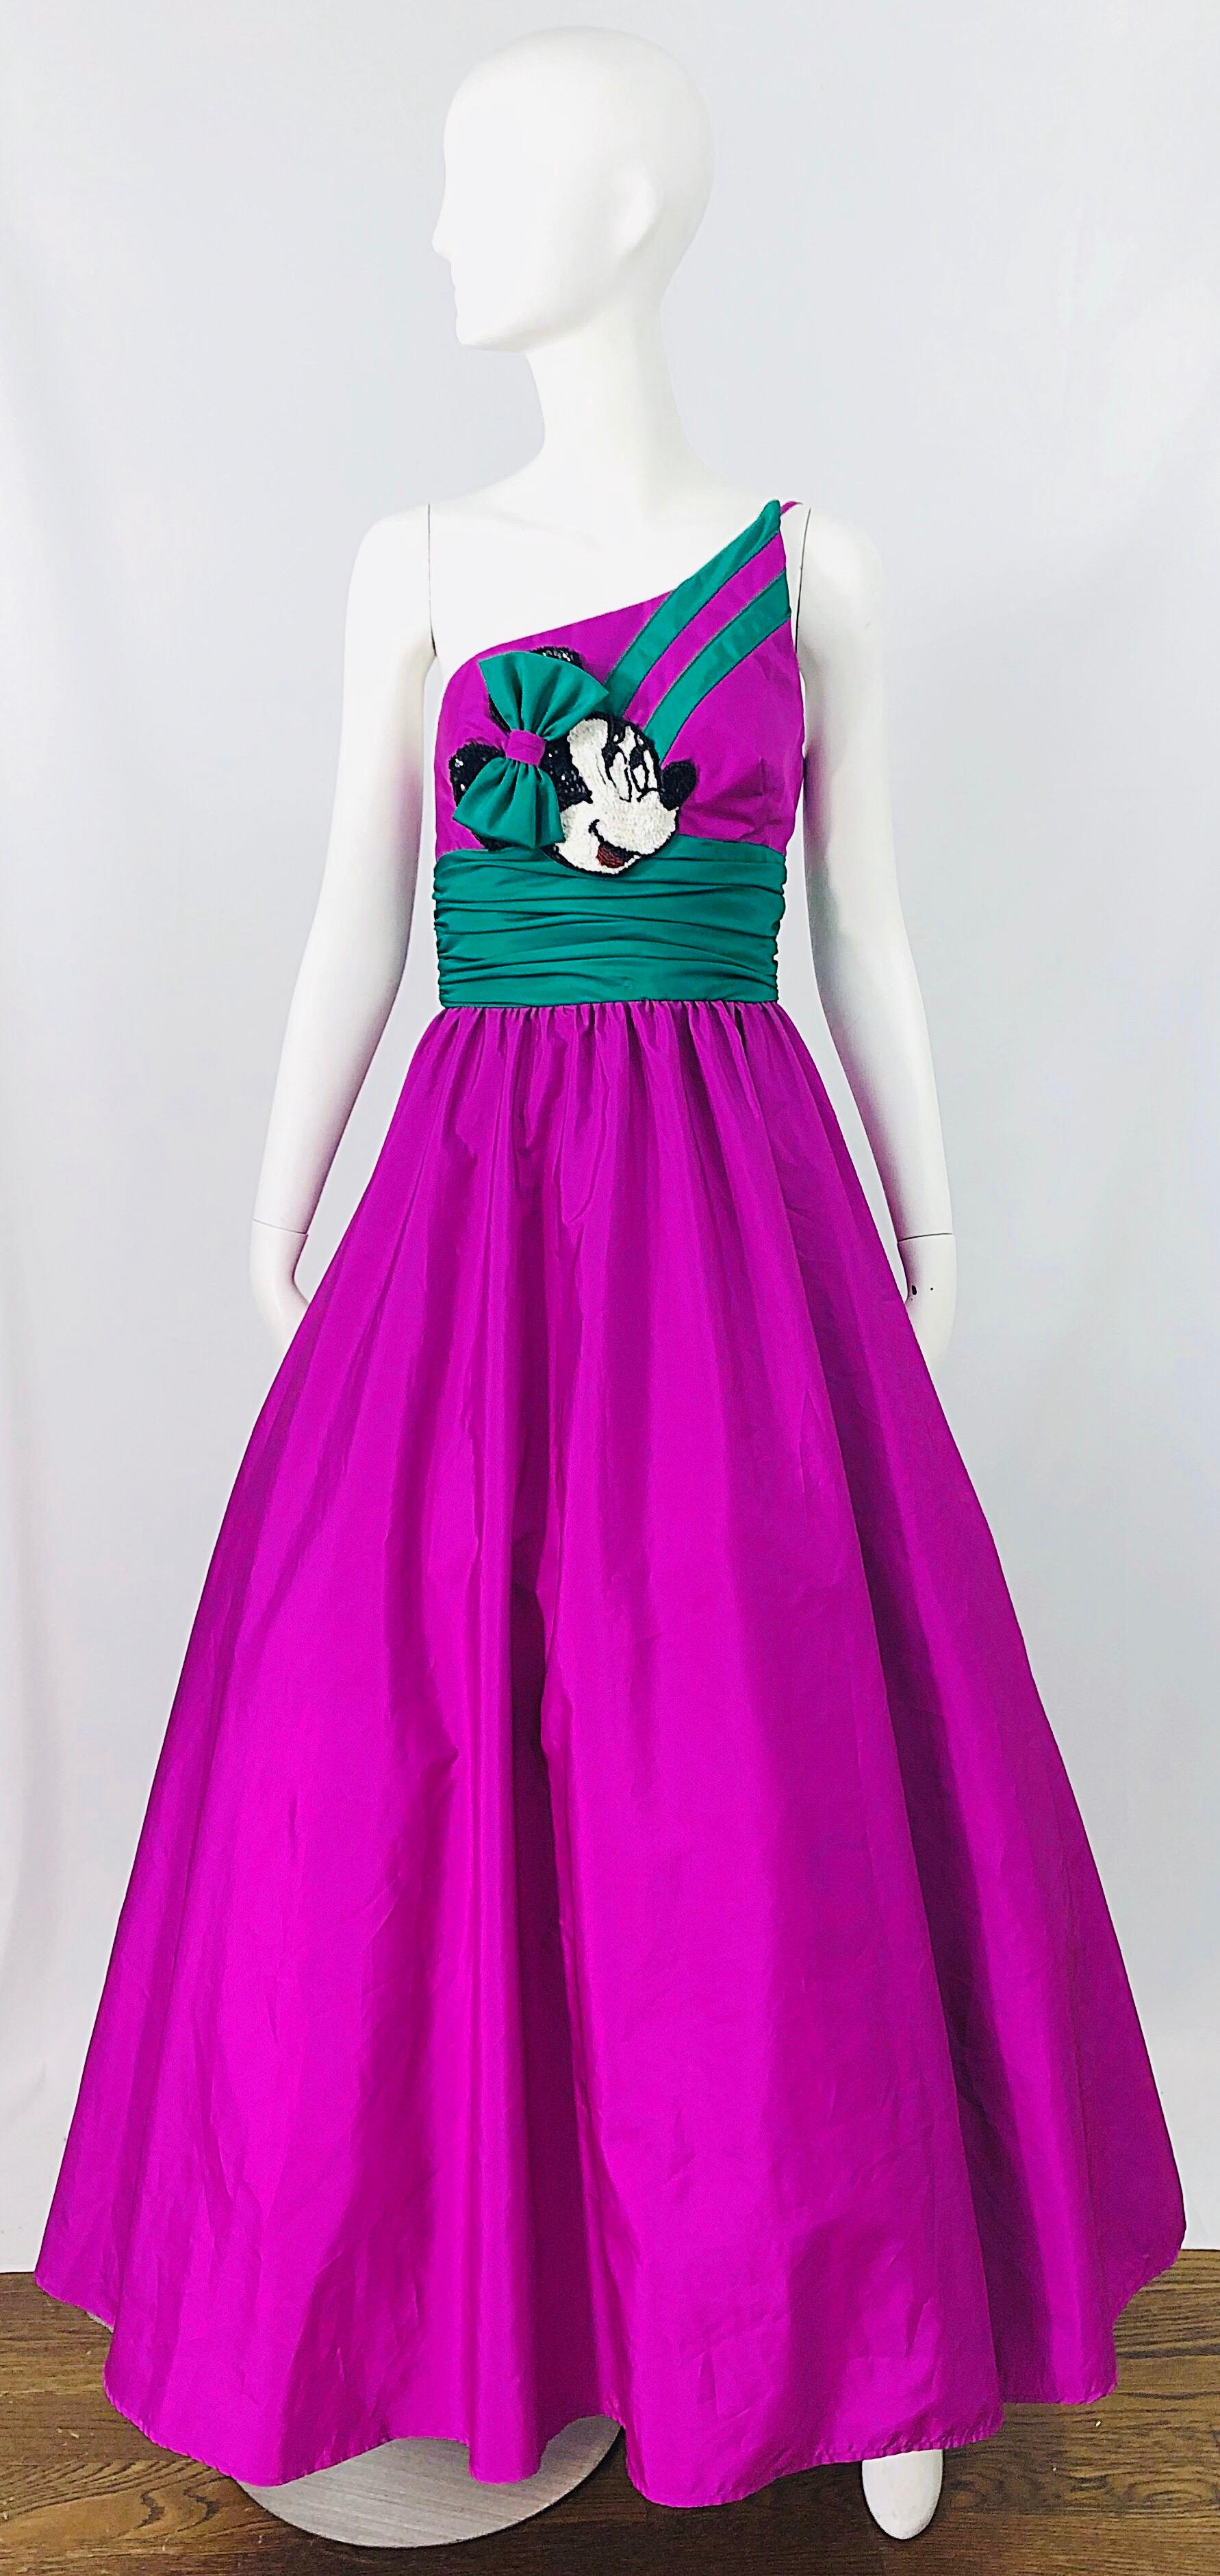 Spectaculaire robe pailletée à une épaule de MIKE BENET X DISNEY des années 1980, édition limitée, violette et verte !  Taffetas violet et ceinture vert kelly. Le détail Minnie Mouse au centre du buste comporte des centaines de paillettes cousues à